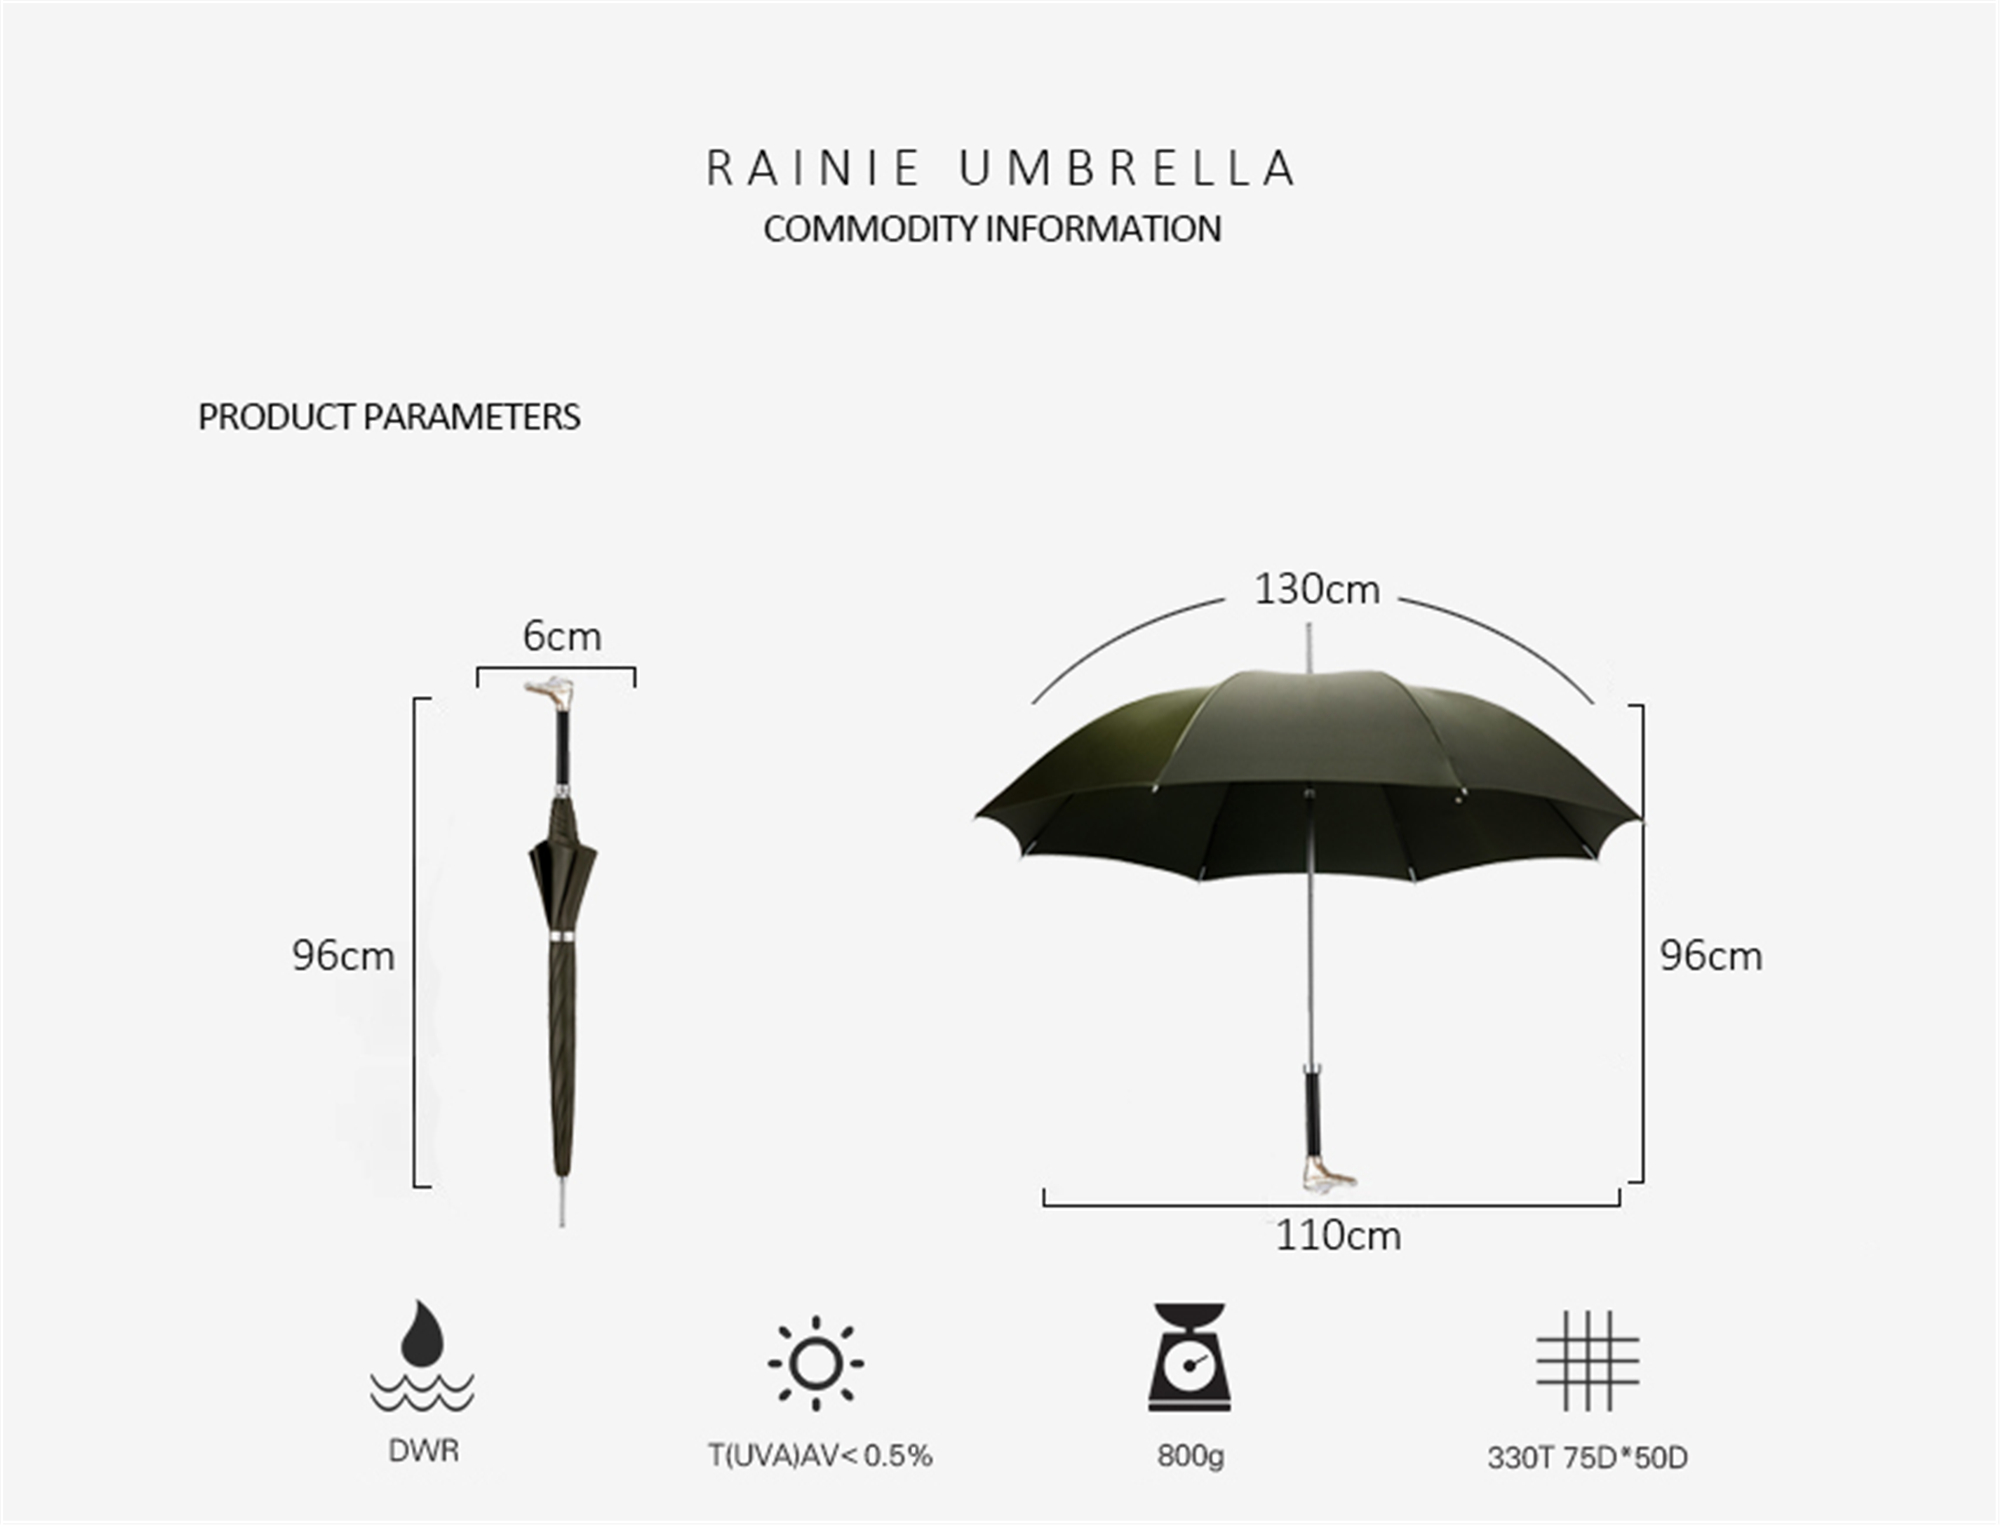 Crocodile umbrella